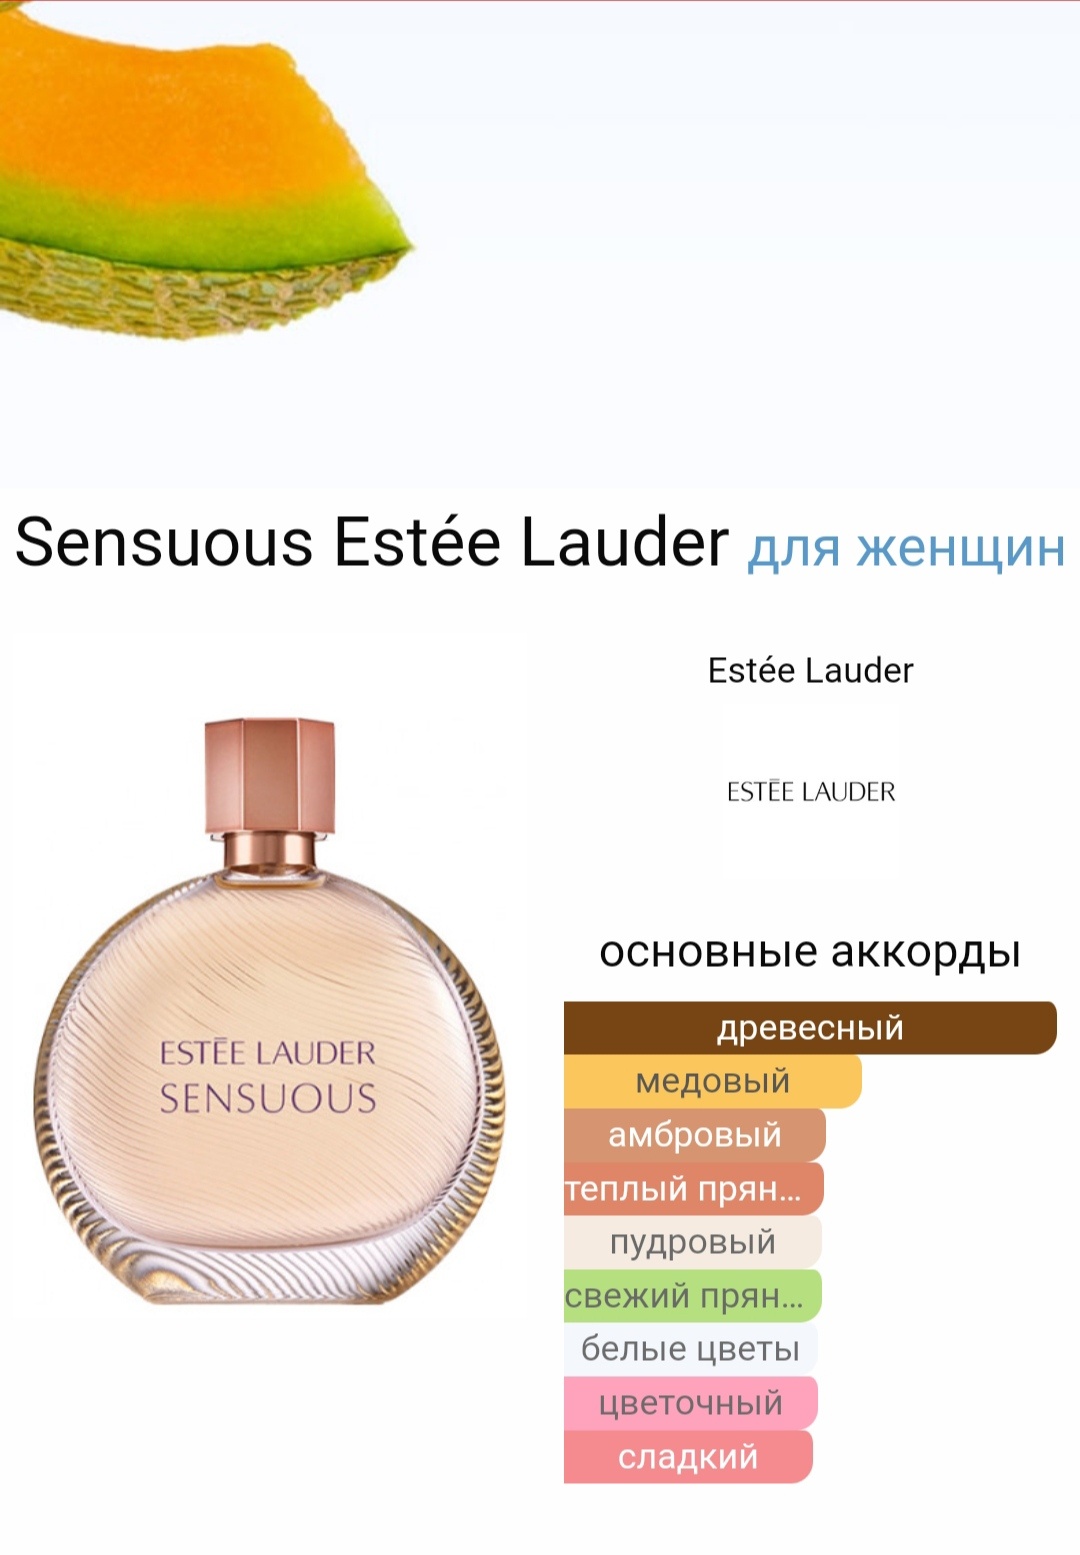 Estee Lauder sensuous